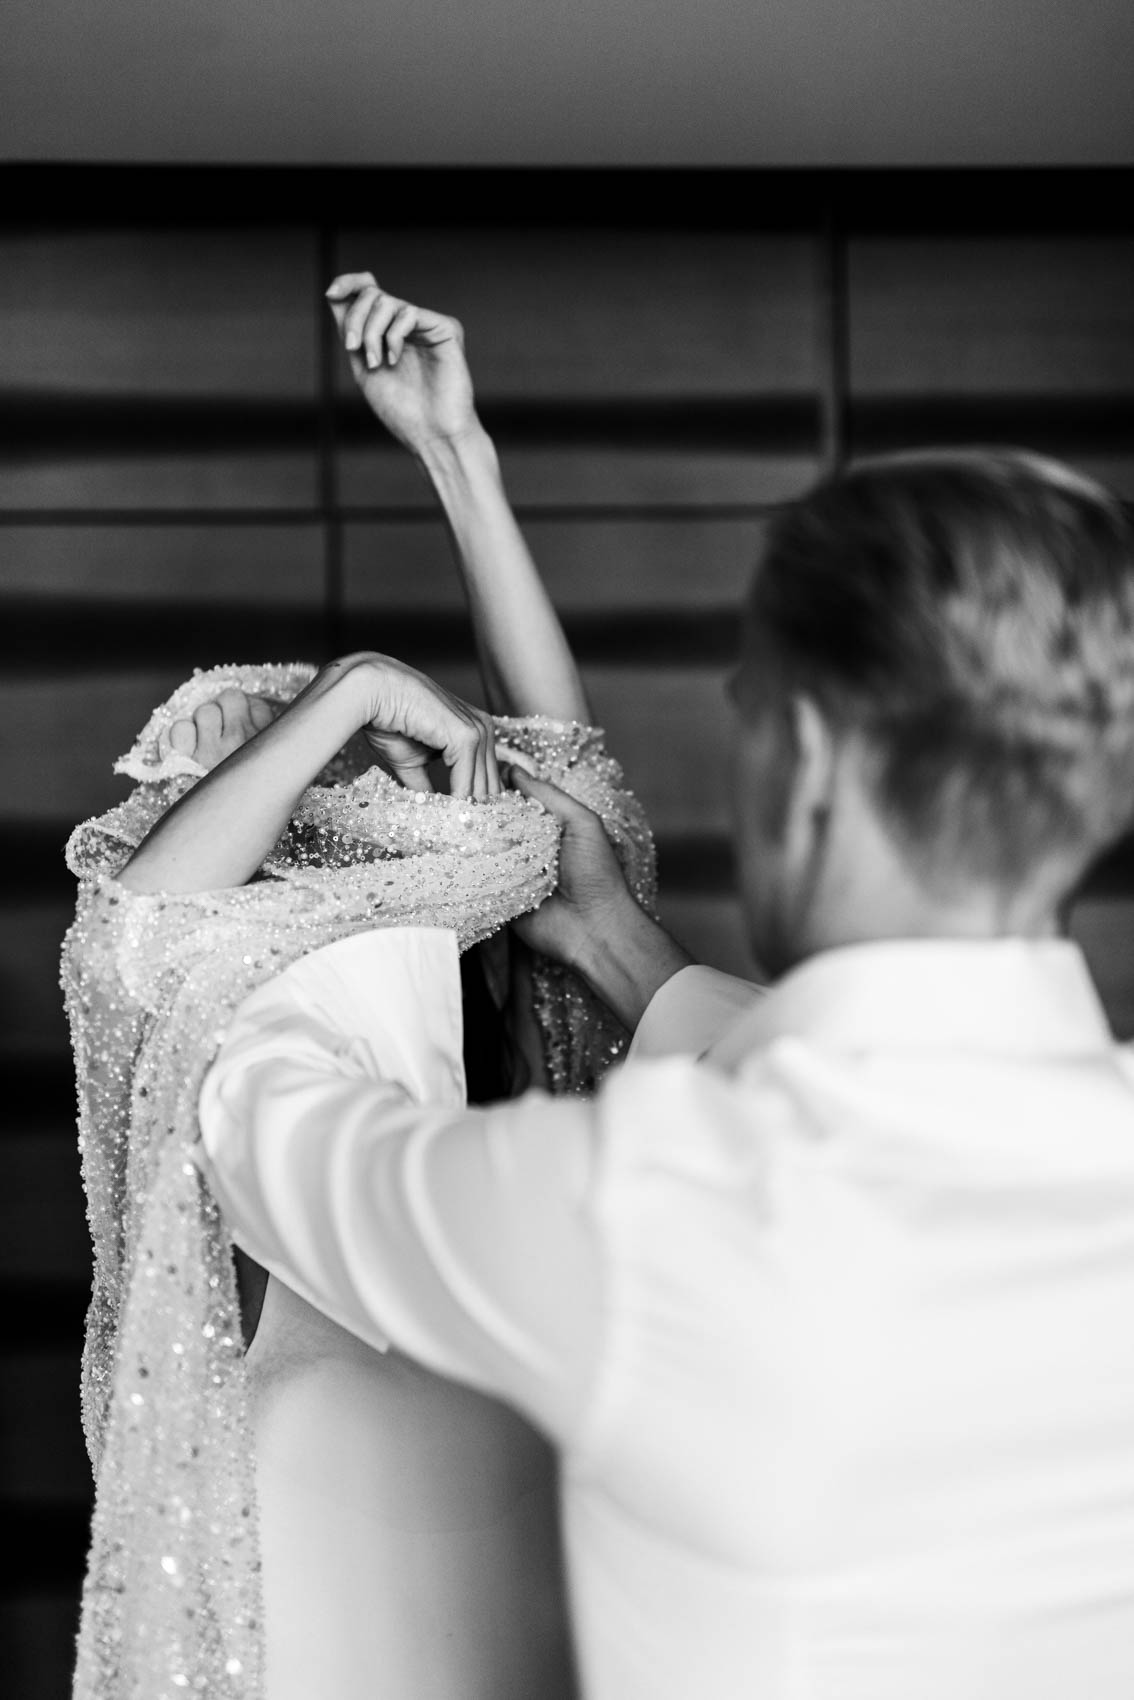 Hochzeitsfoto in schwarz-weiß. Braut hat die Arme in die Luft gestreckt während der Bräutigam ihr bei Anziehen eines Überkleides über das Brautkleid hilft. Das Brautpaar befindet sich in einer Suite des Factory Hotels in Münster